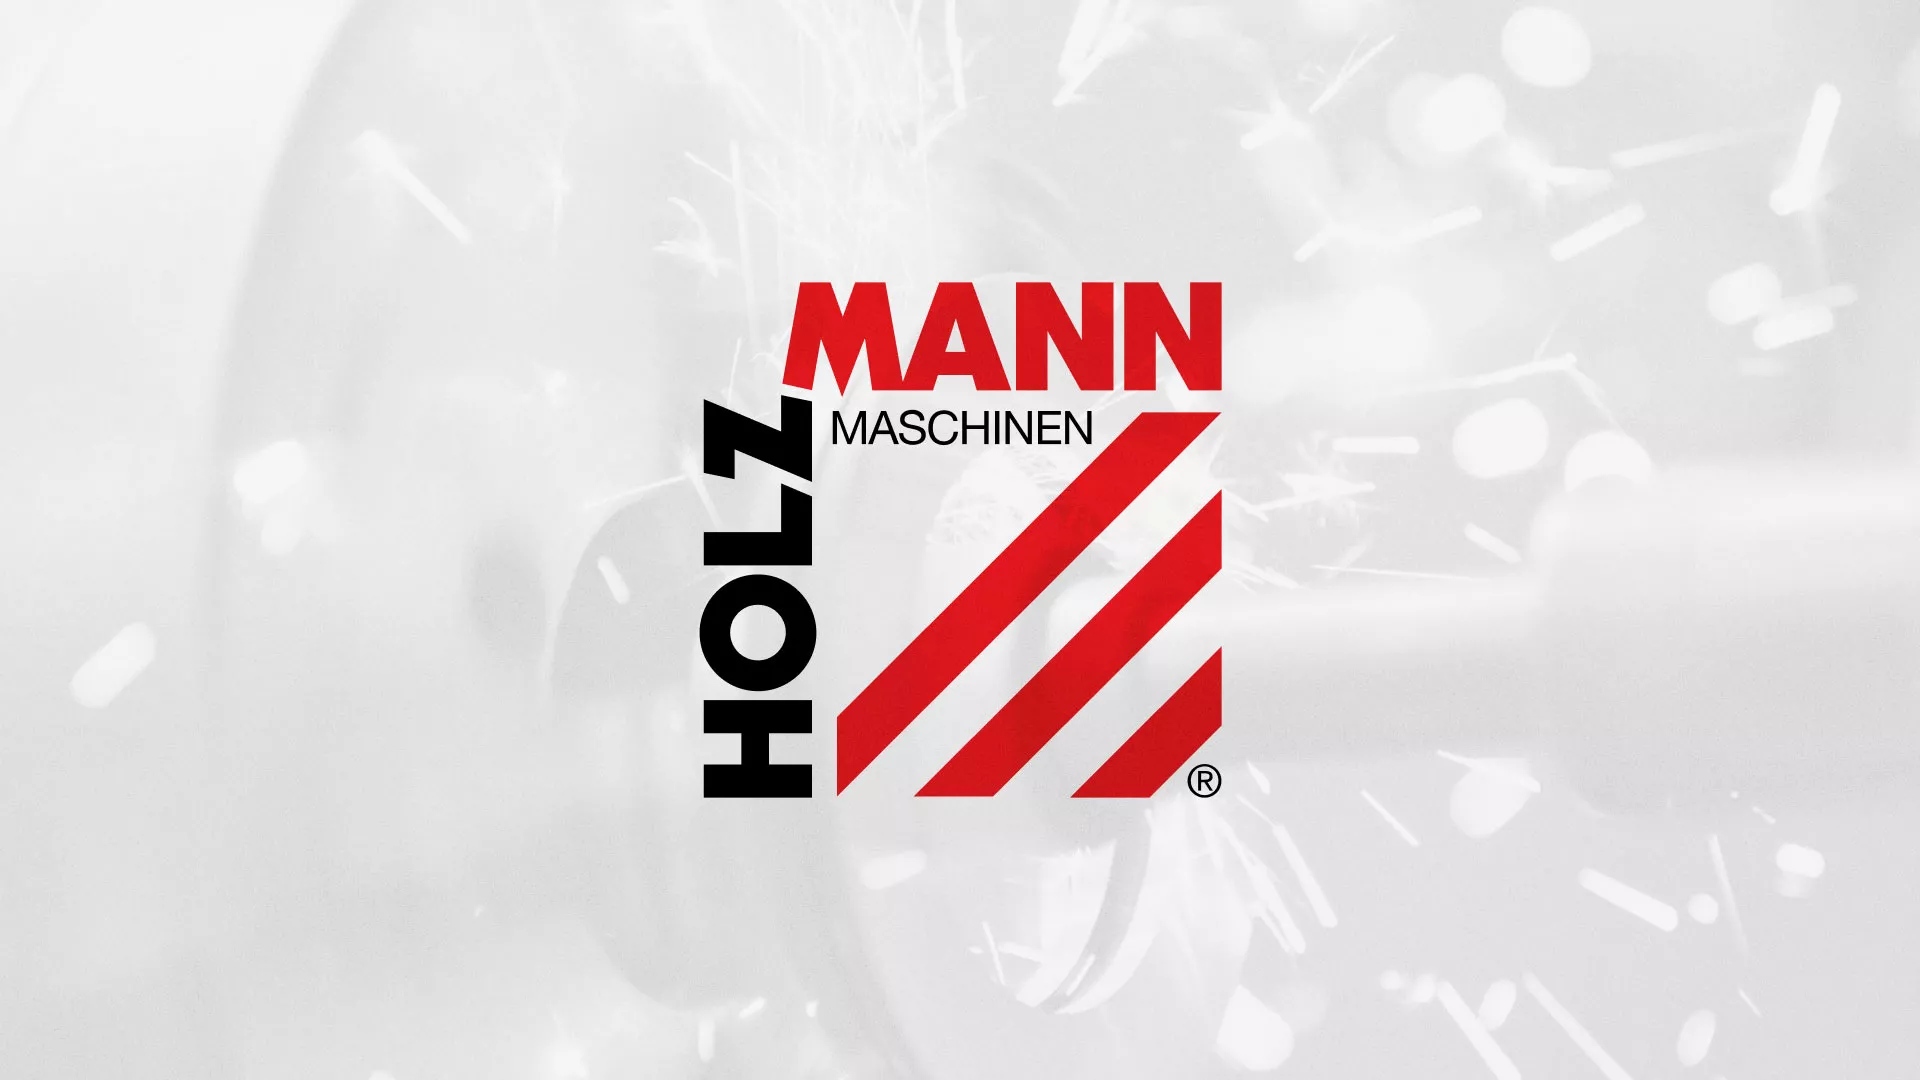 Создание сайта компании «HOLZMANN Maschinen GmbH» в Бикине